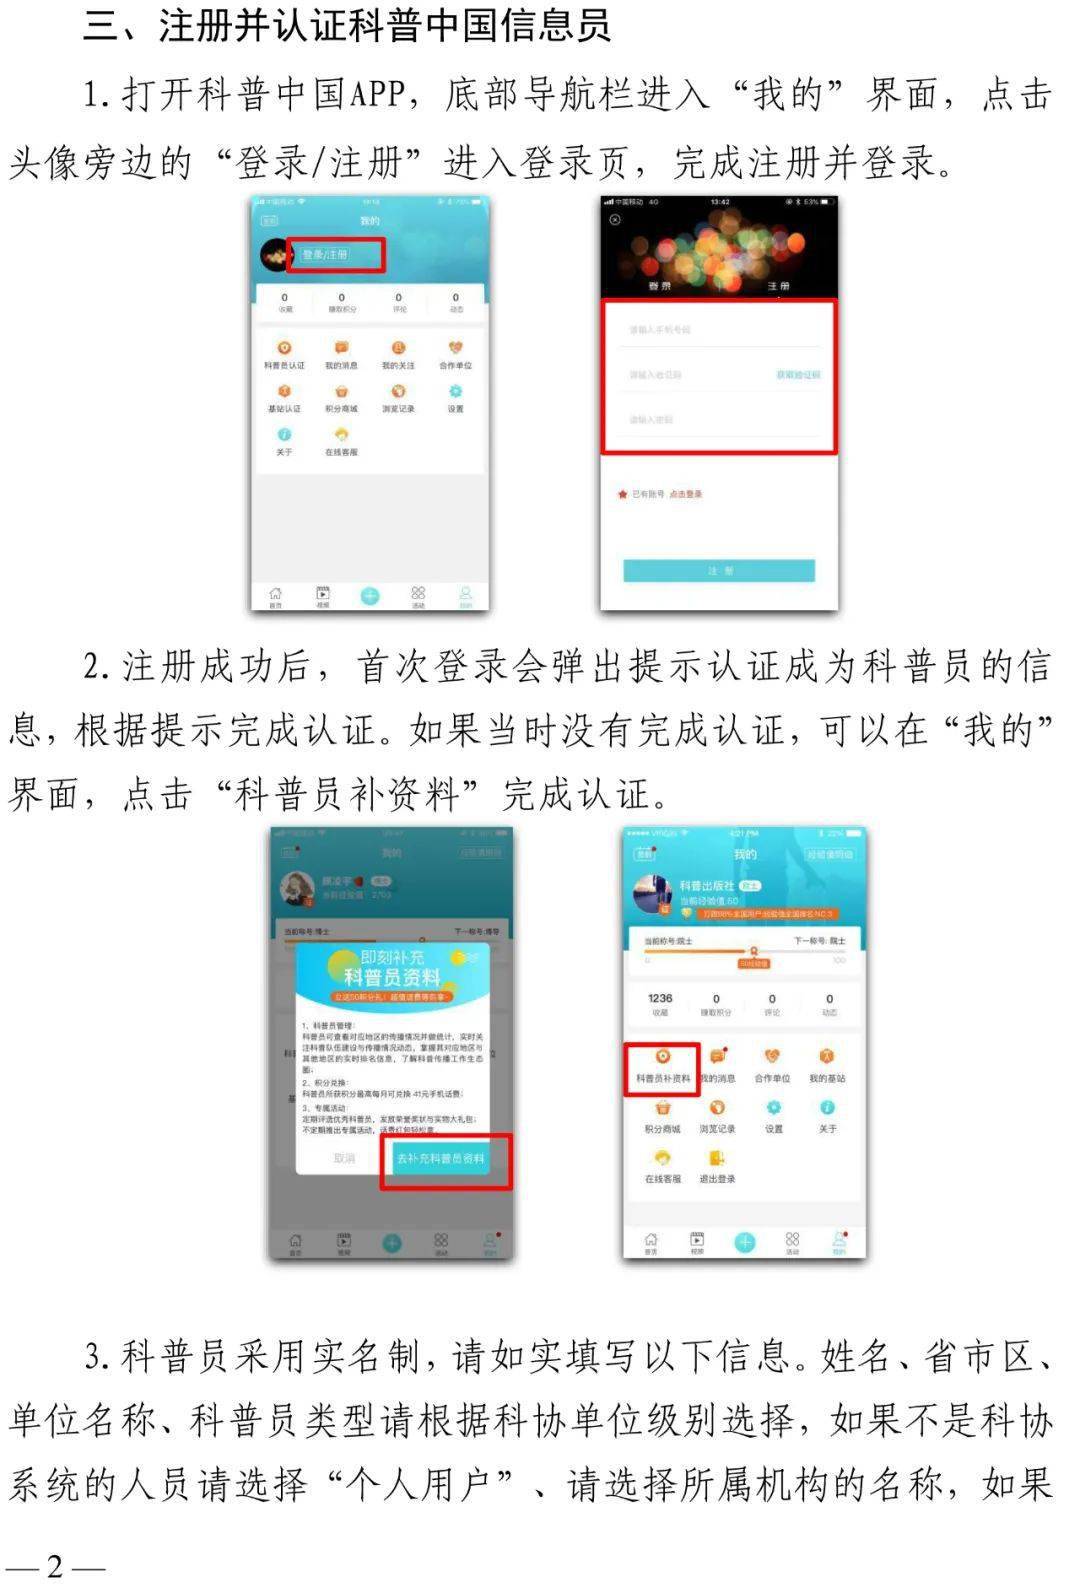 下载科普中国app,了解更多科普知识!